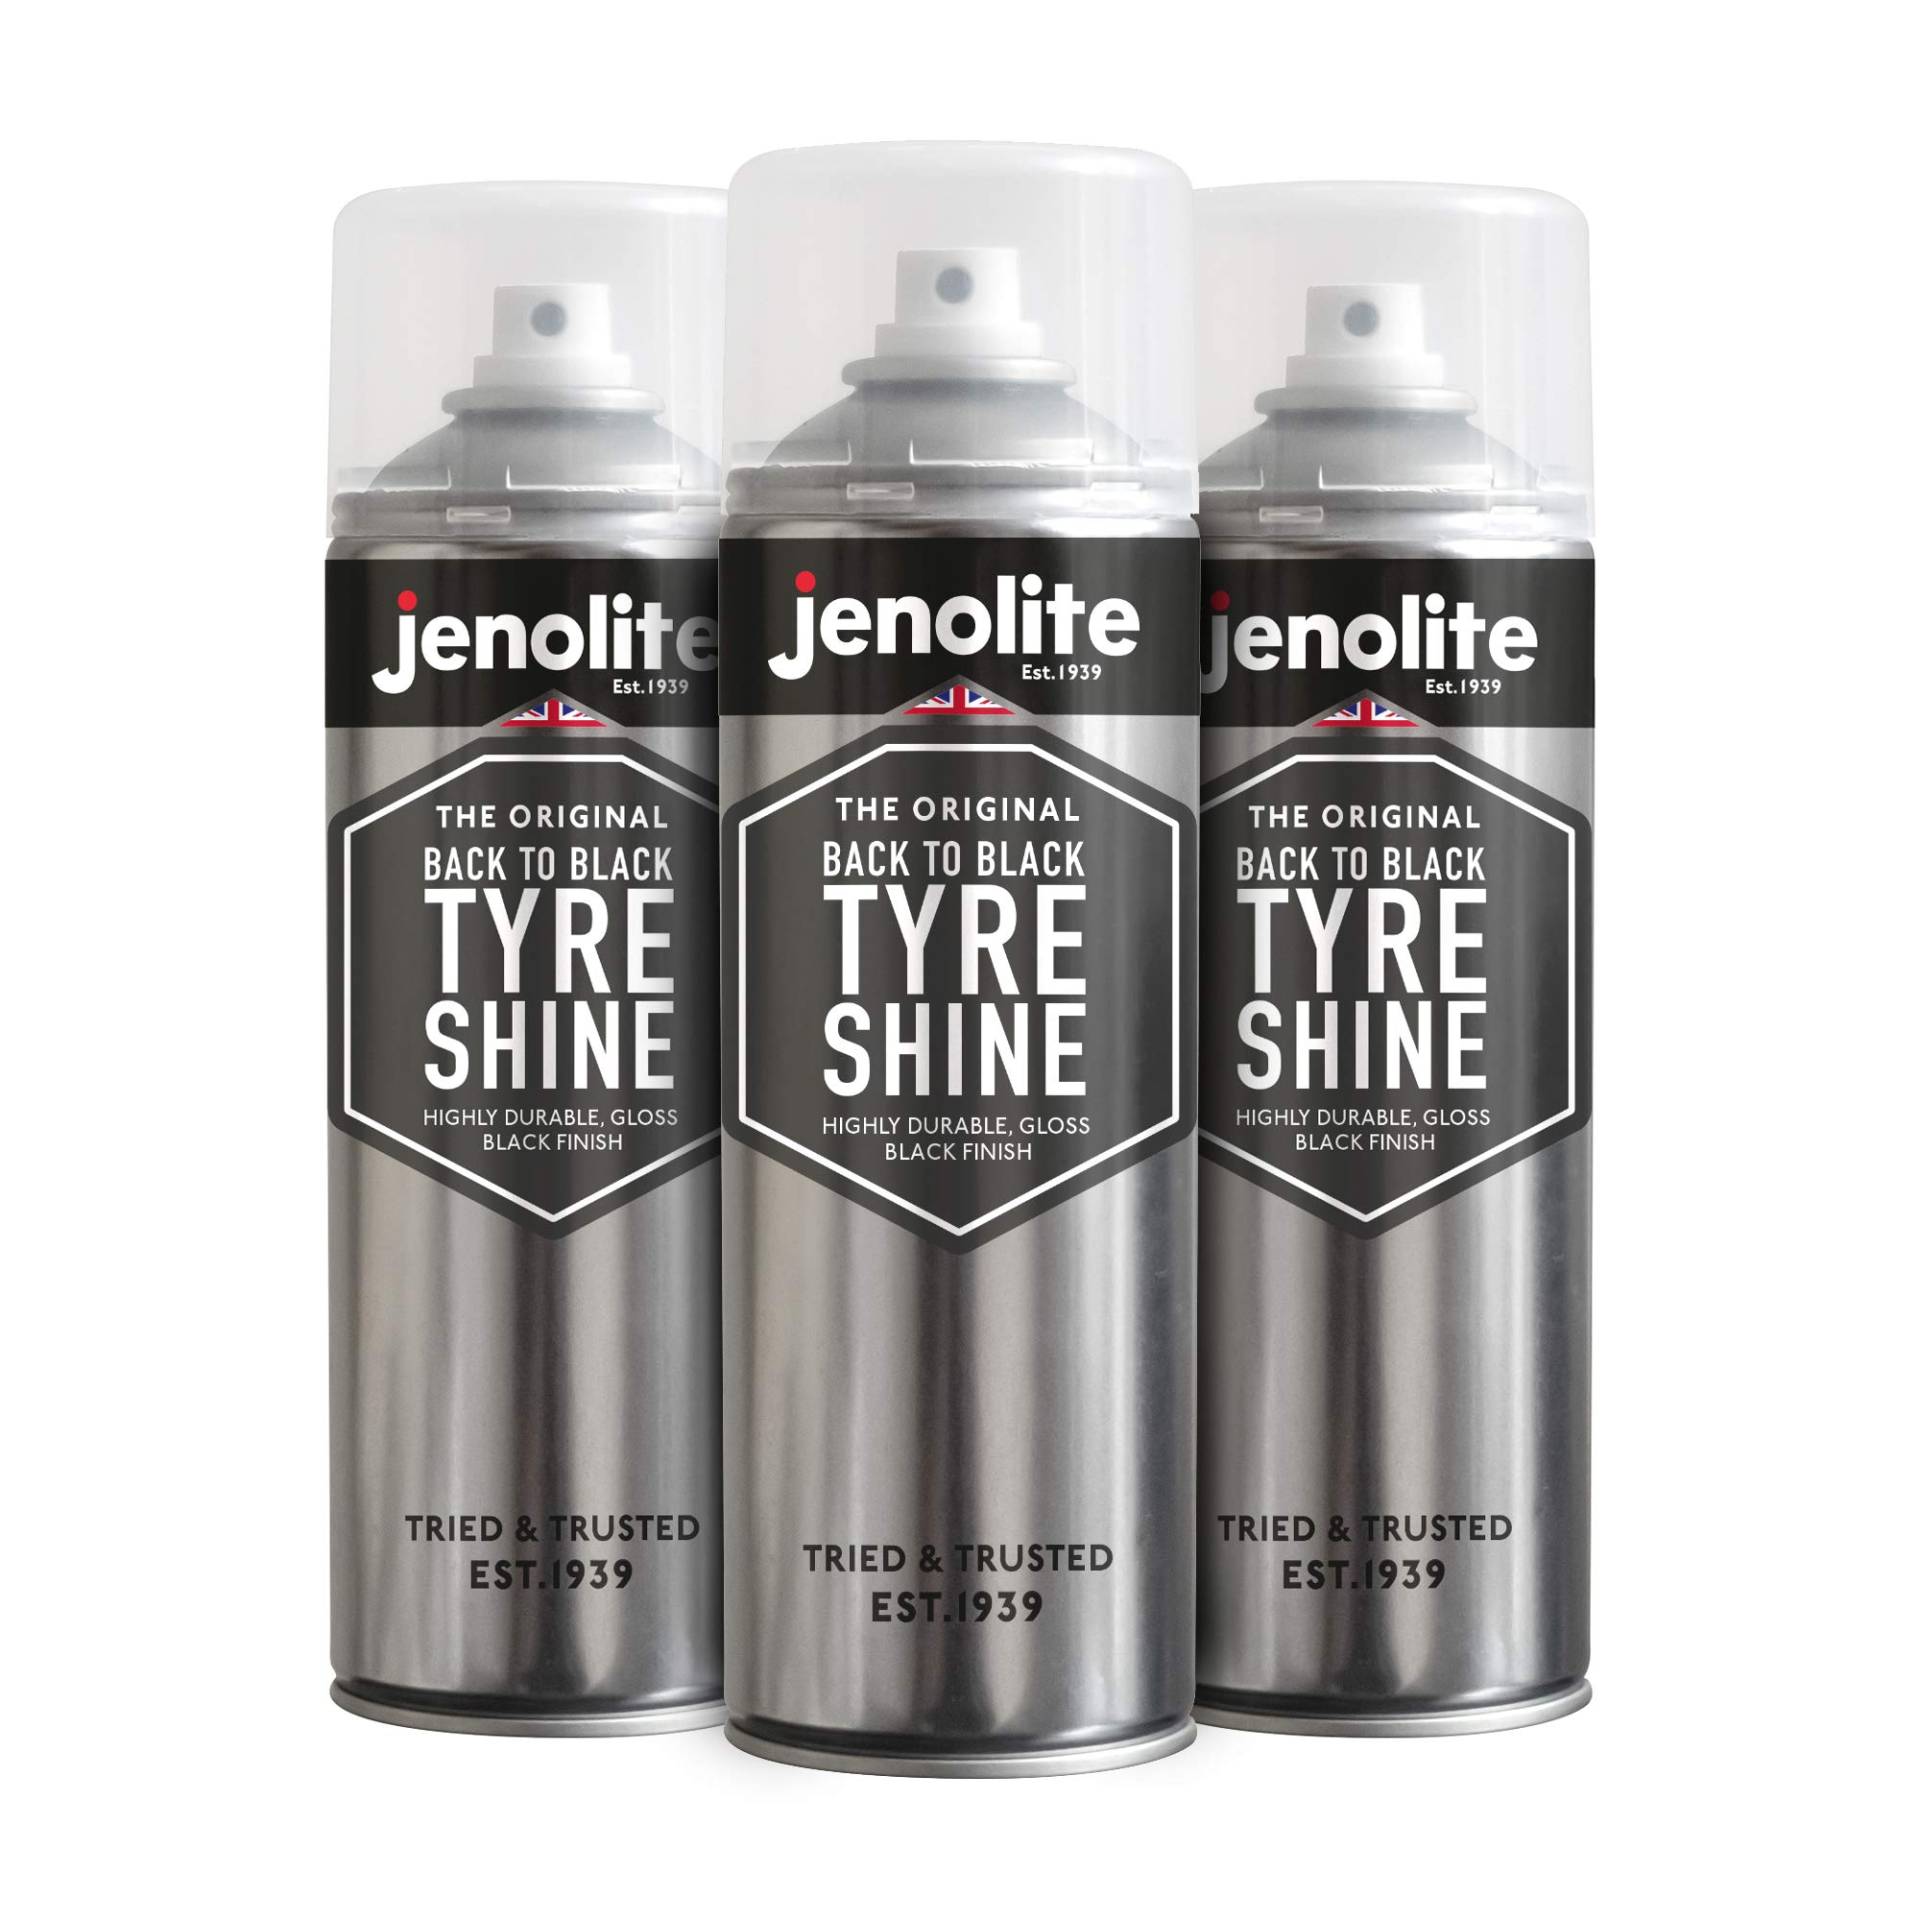 JENOLITE Zurück zu Schwarz Reifenglanzspray | Stellt Reifen Wieder her und schützt sie | Sofortiges Reifendressing | Langanhaltender Wet-Look-Glanz | 3 x 500 ml von JENOLITE